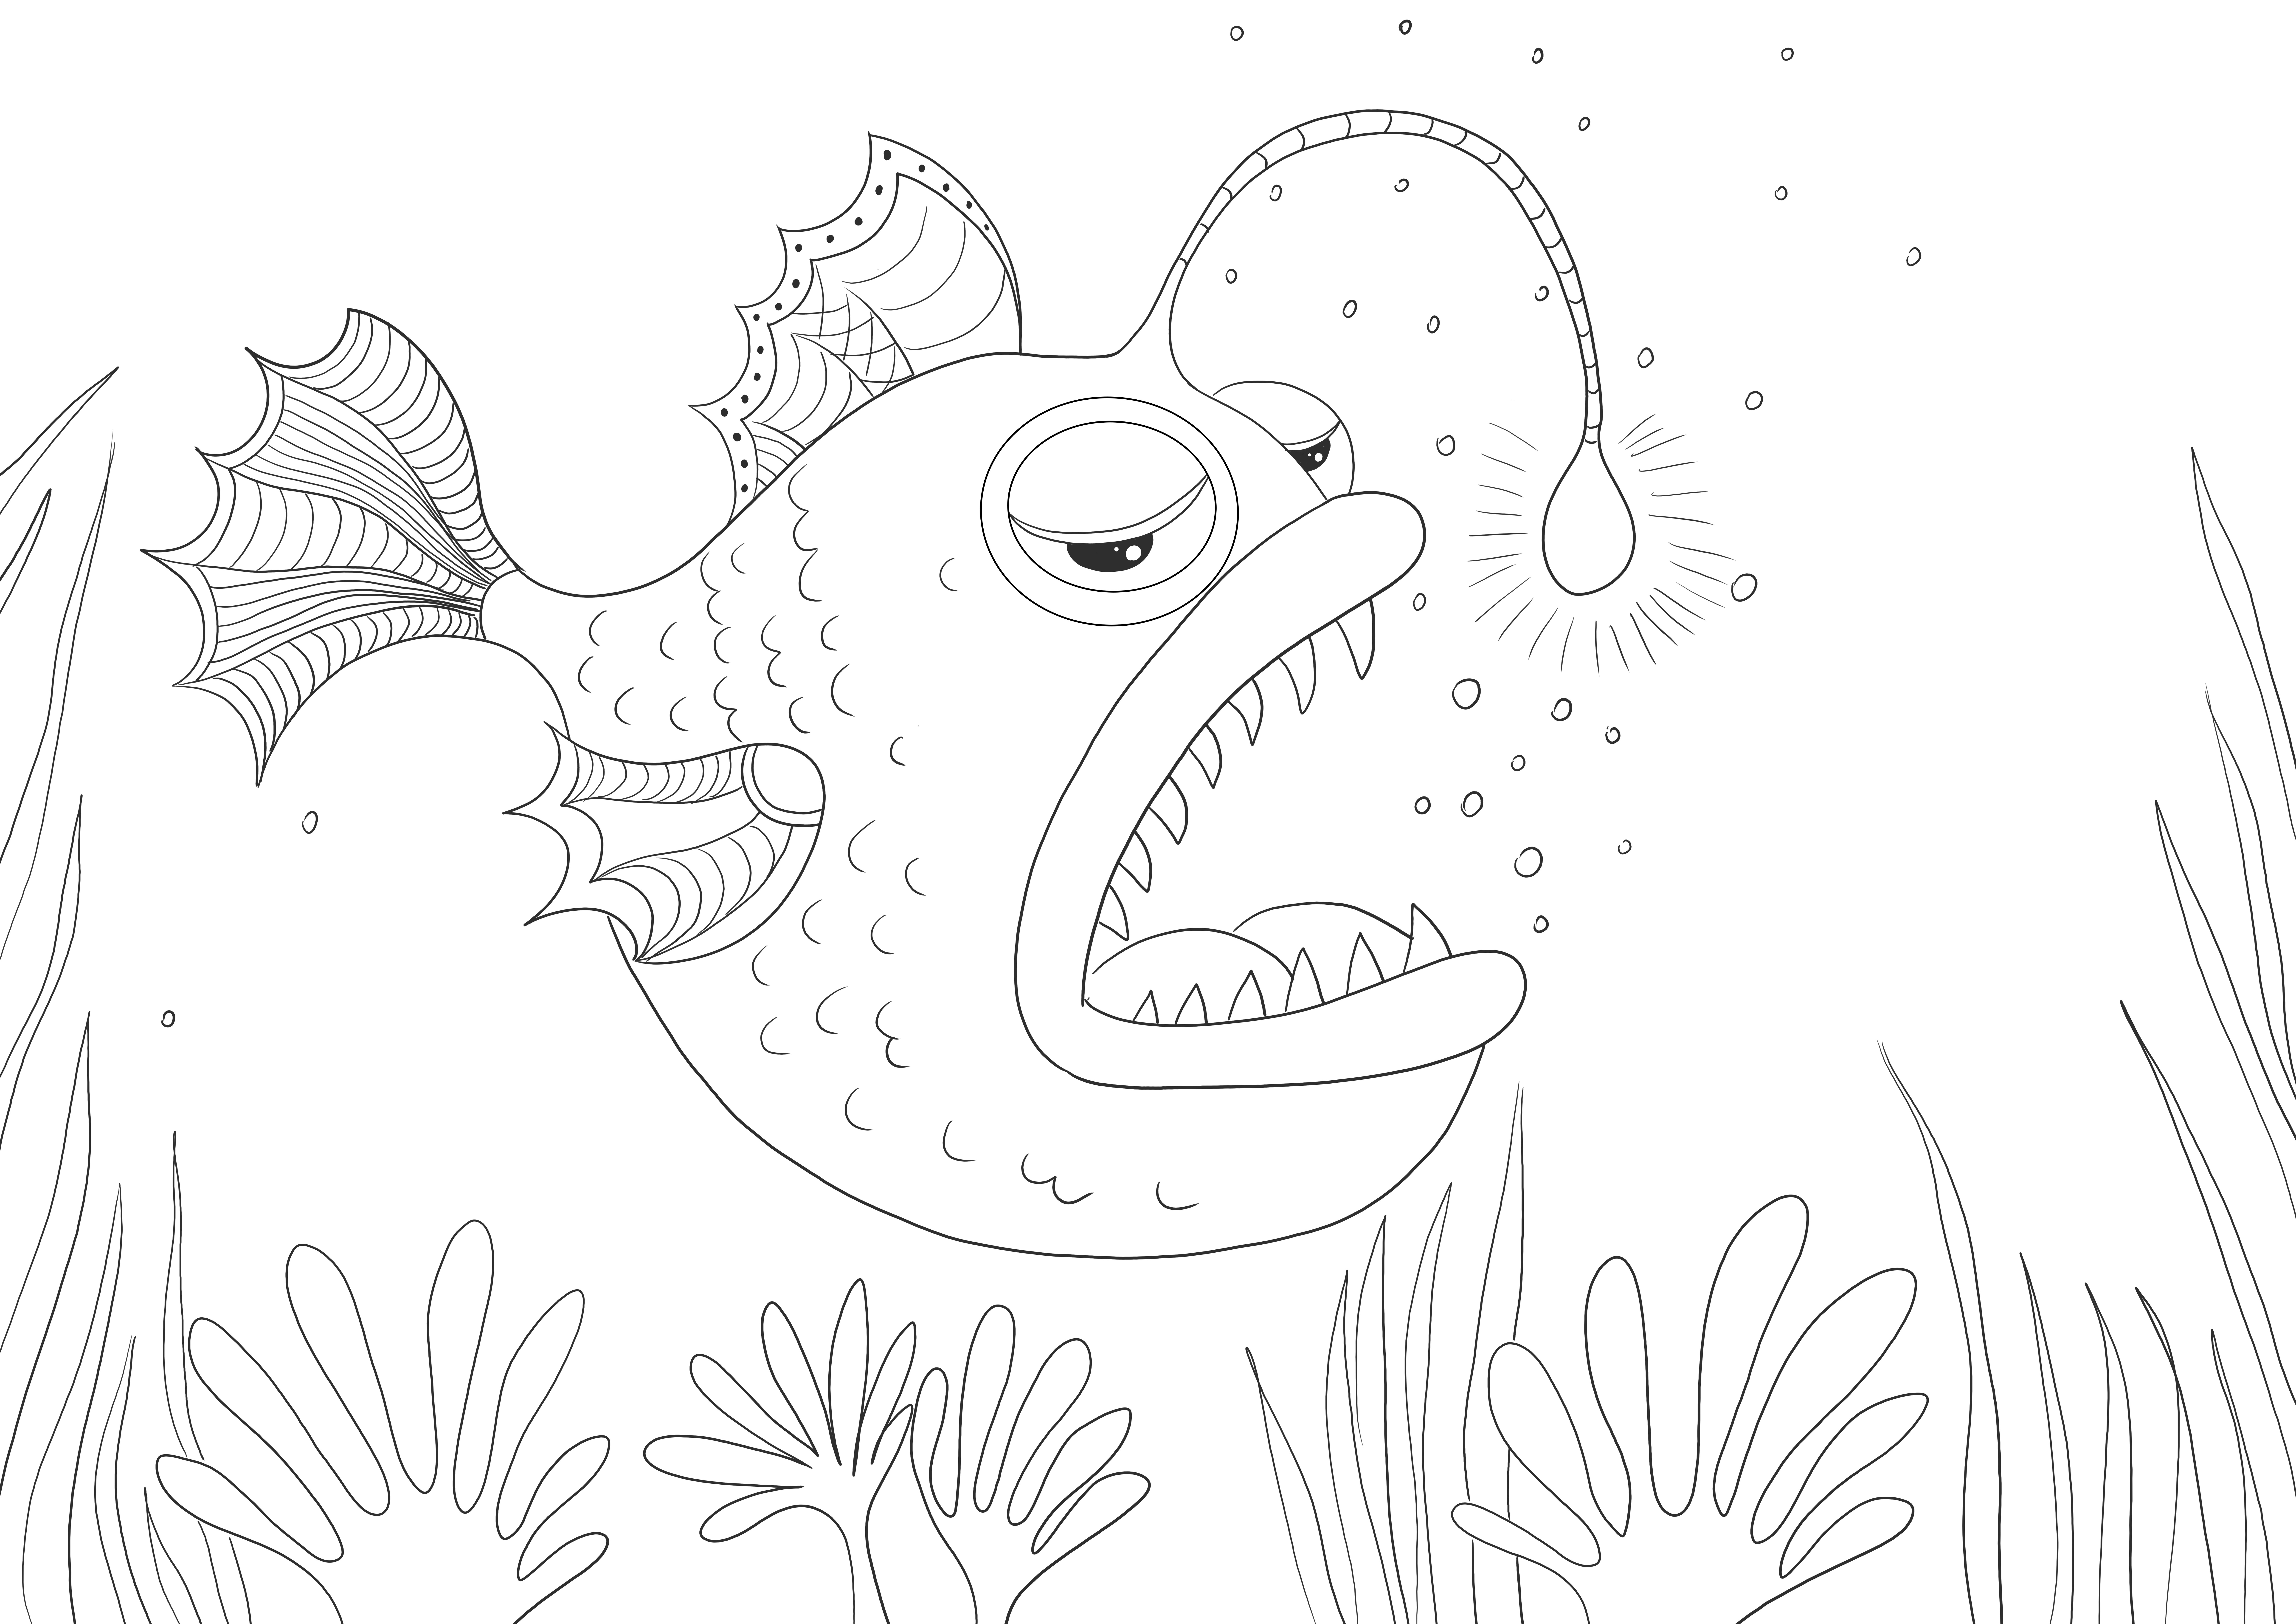 Fierce Anglerfish do pokolorowania i pobrania za darmo dla dzieci